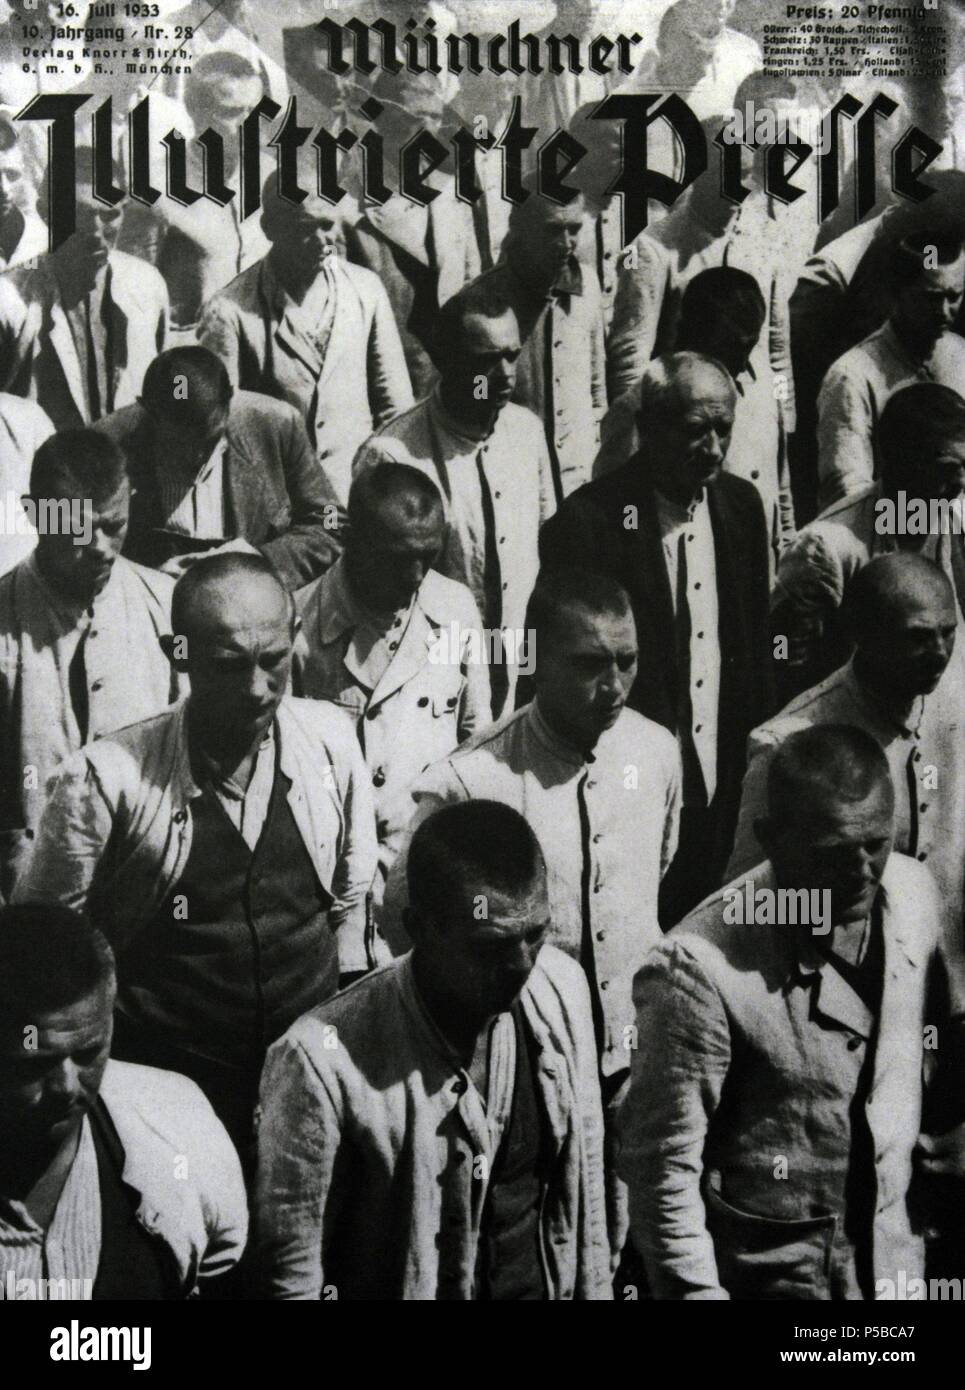 Le unchner "Illustrierte Presse'. Le 16 juillet 1933. Page d'accueil. Photo par Friedrich Franz Bauer, commandé par le SS. Le site du mémorial du camp de concentration de Dachau. Banque D'Images